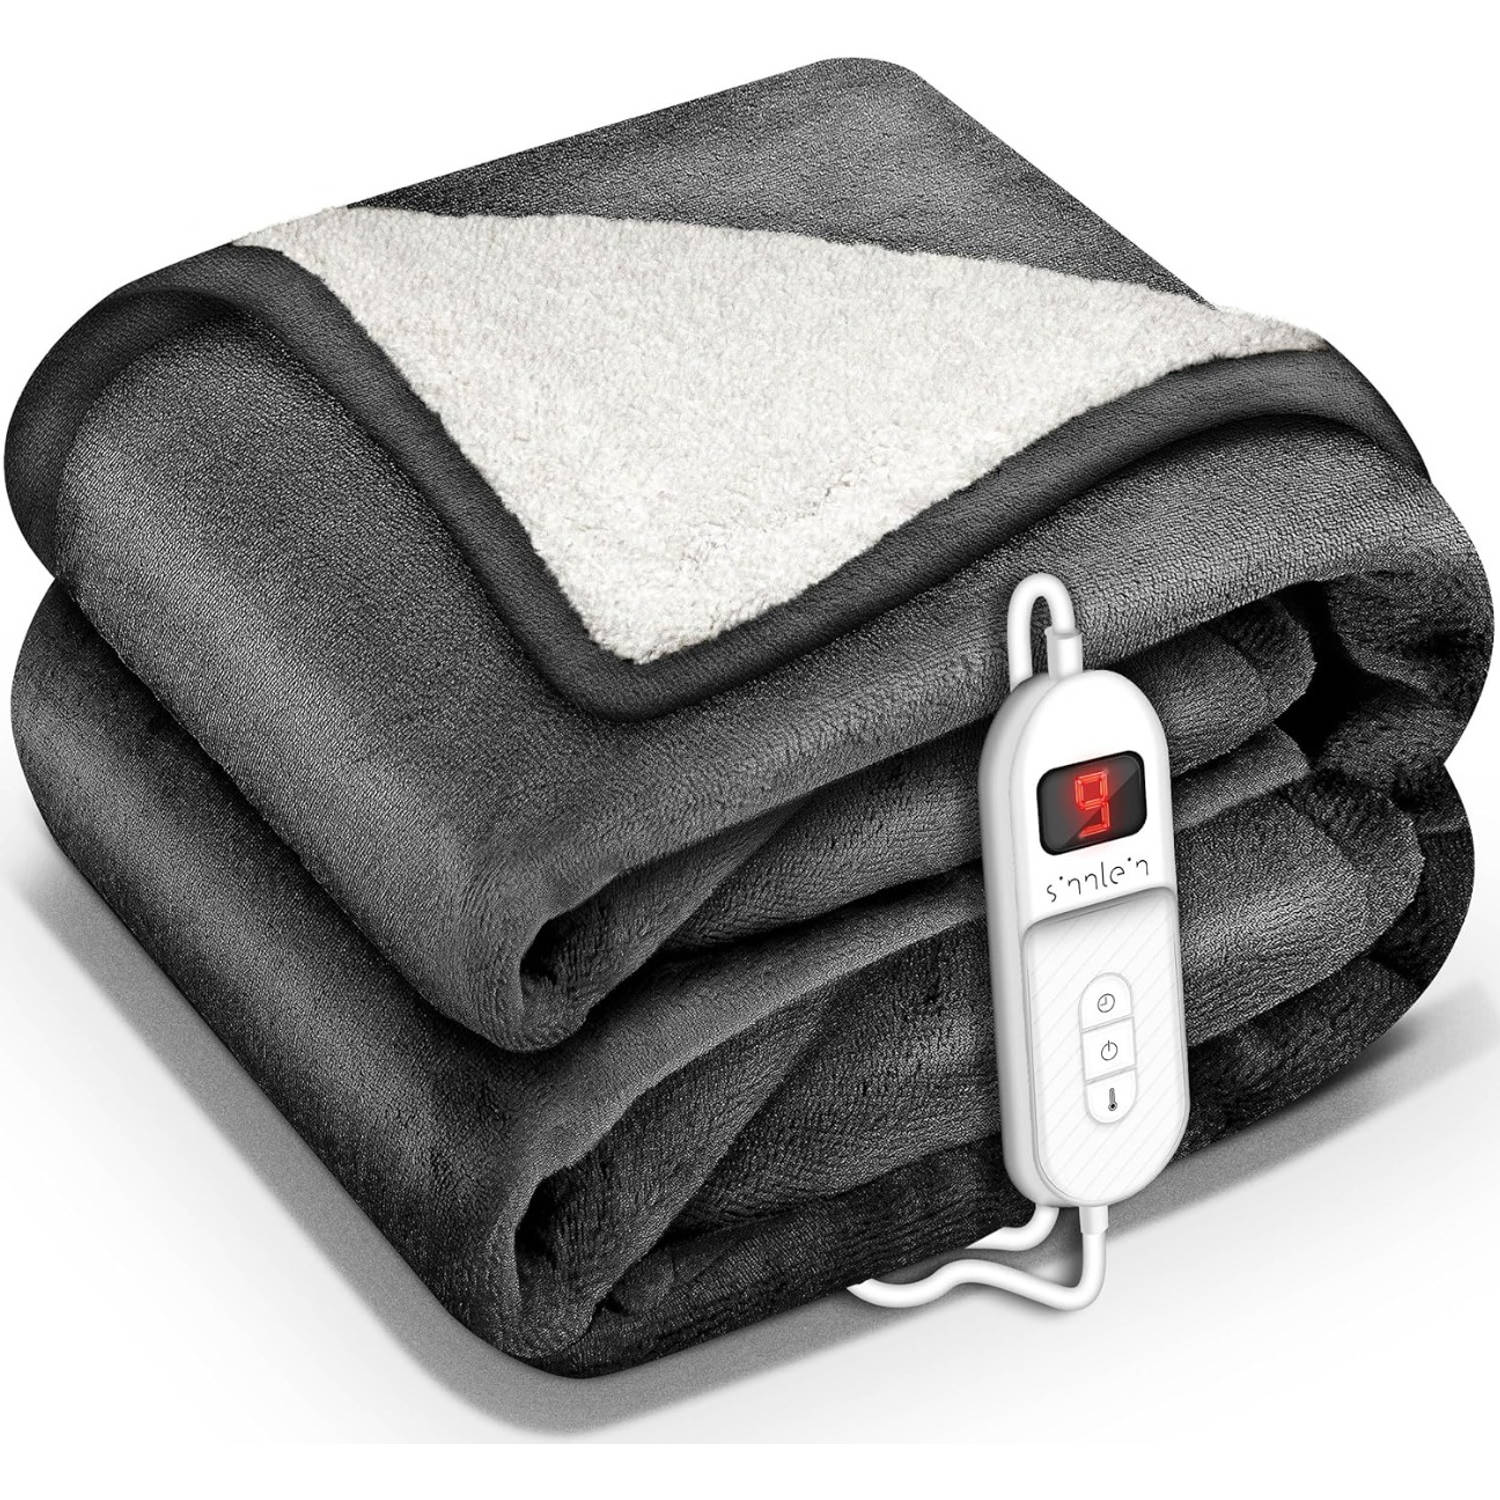 Sinnlein- Elektrische deken met automatische uitschakeling, antraciet, 200 x 180 cm, warmtedeken met